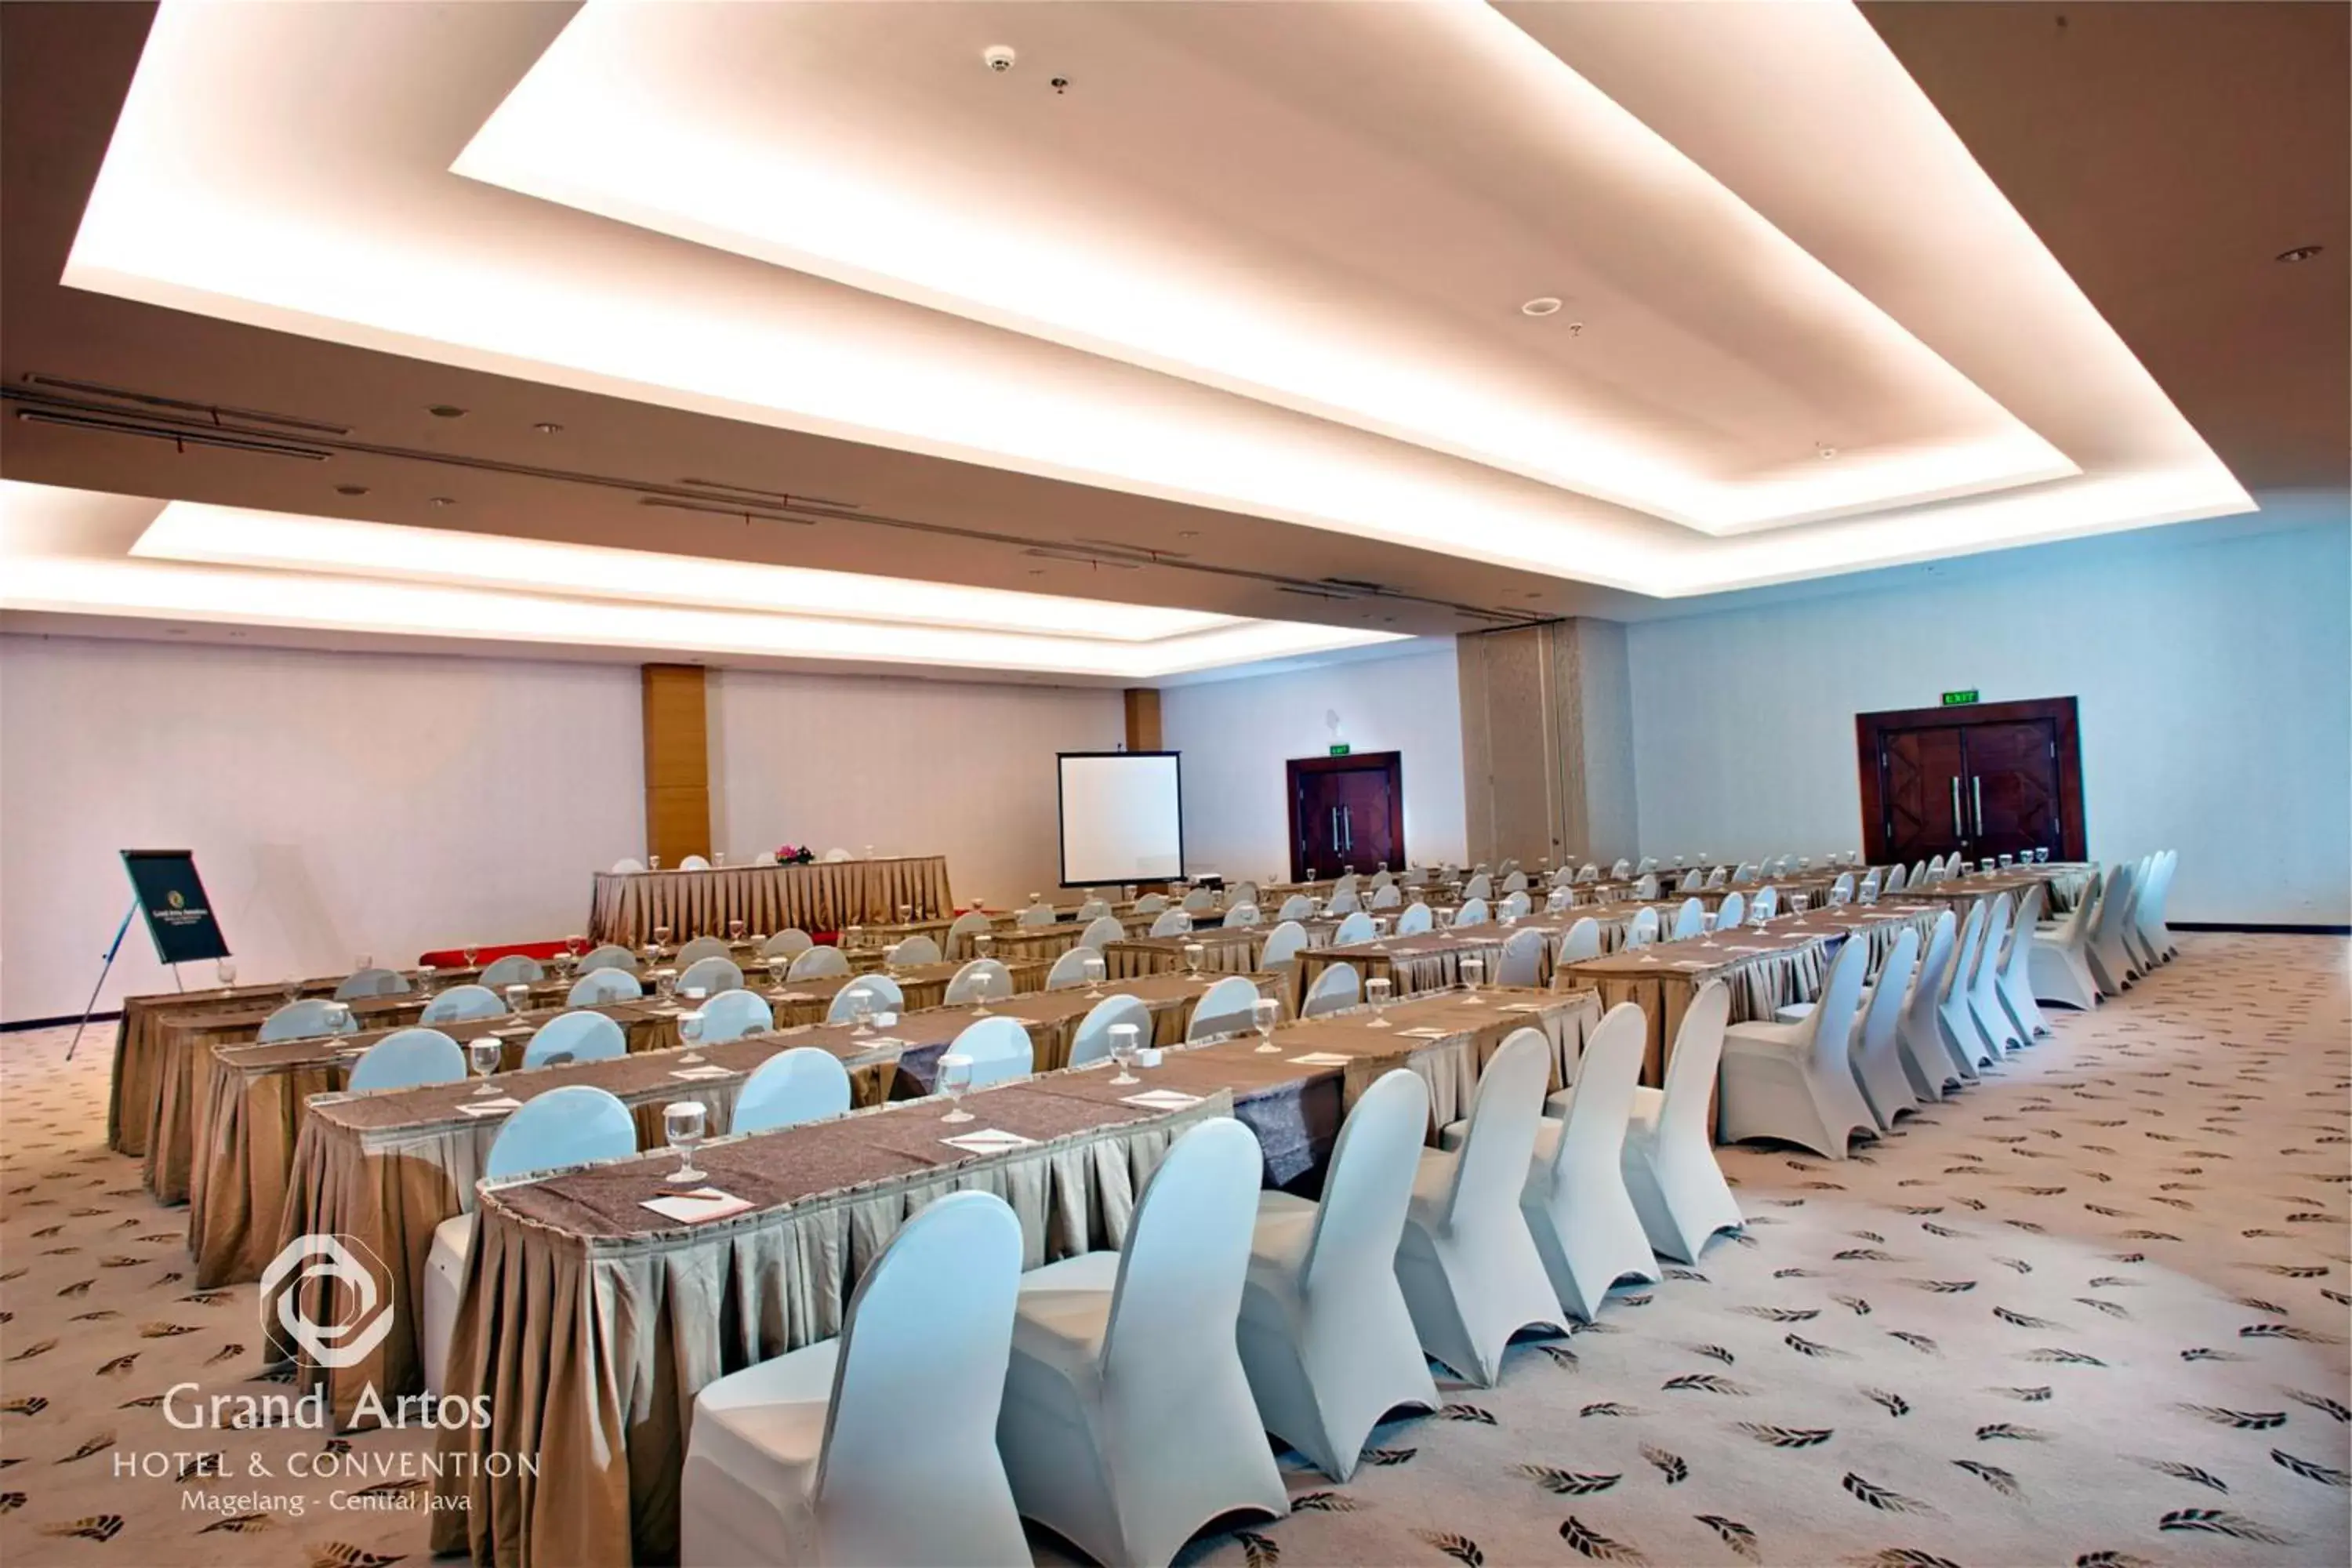 People, Banquet Facilities in Grand Artos Hotel & Convention